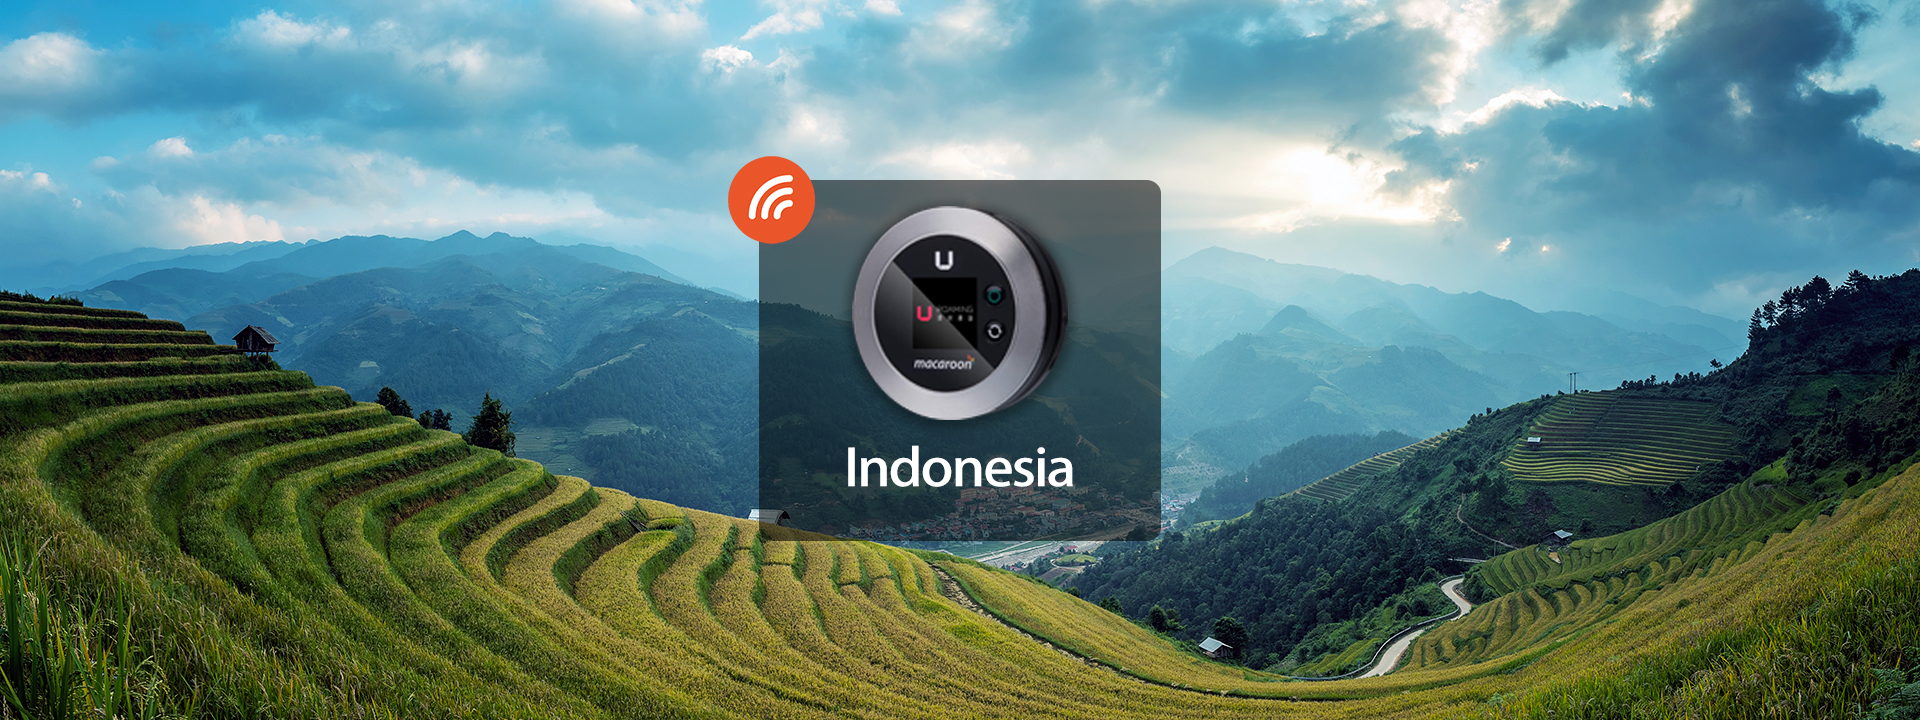 印尼4G WiFi分享器 由Uroaming提供